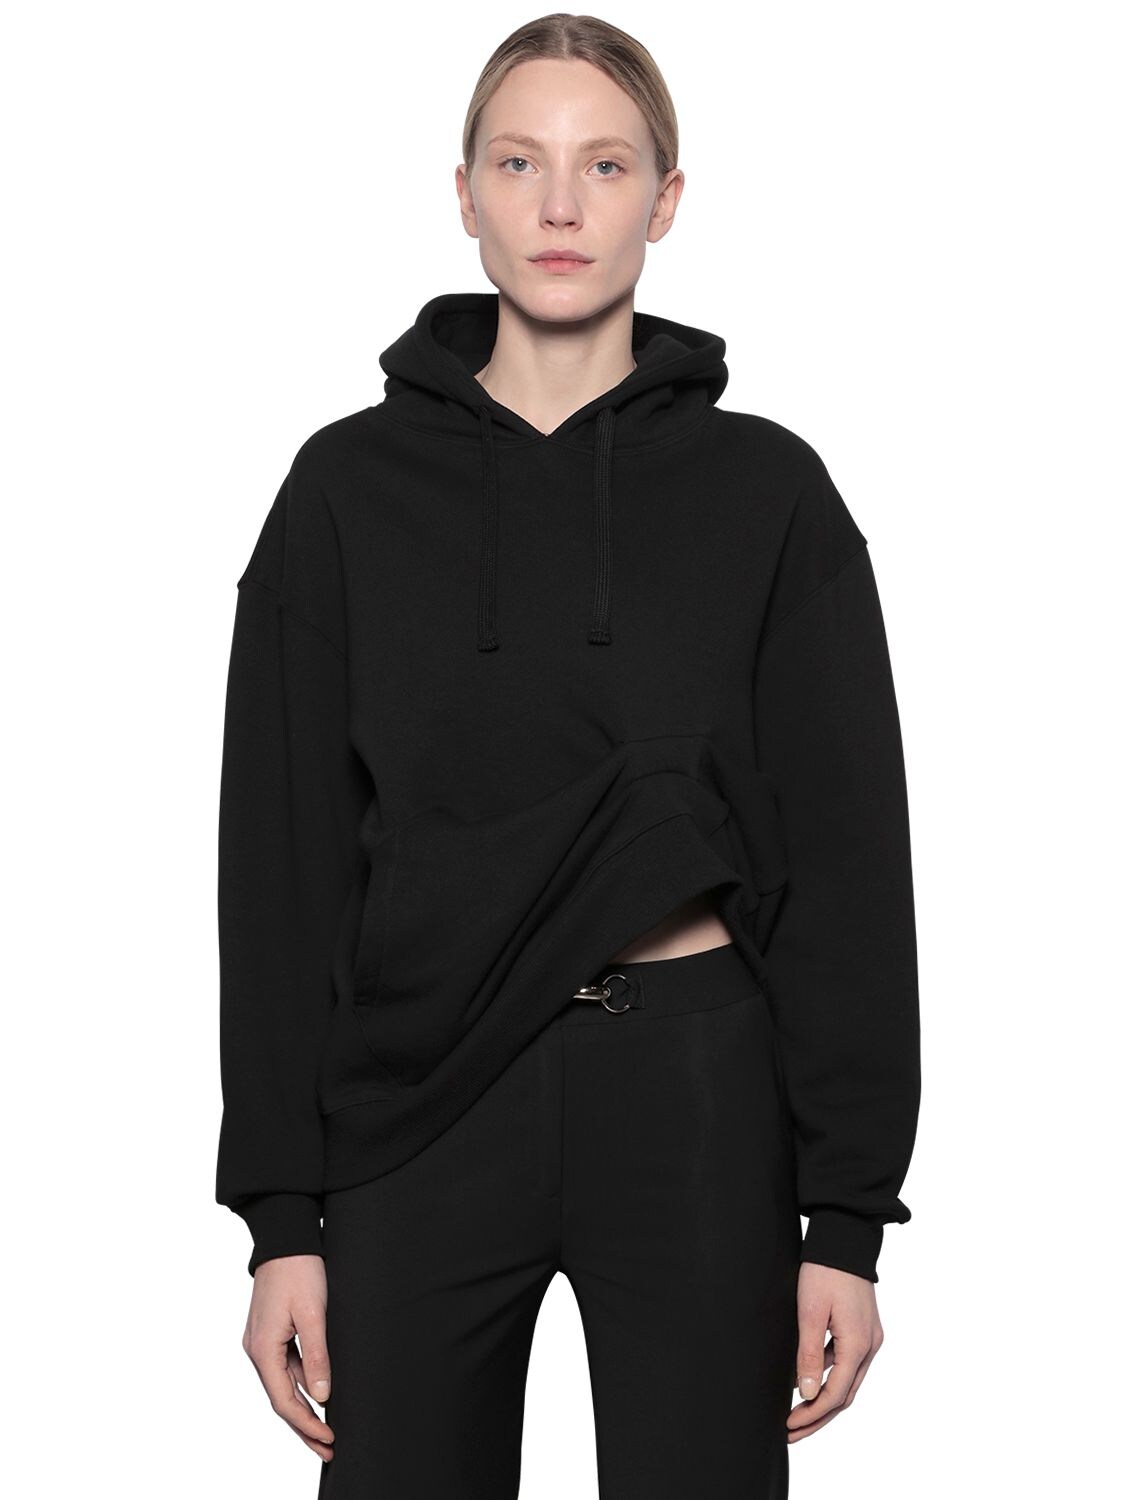 Act N°1 Draped Cotton Sweatshirt Hoodie In Black